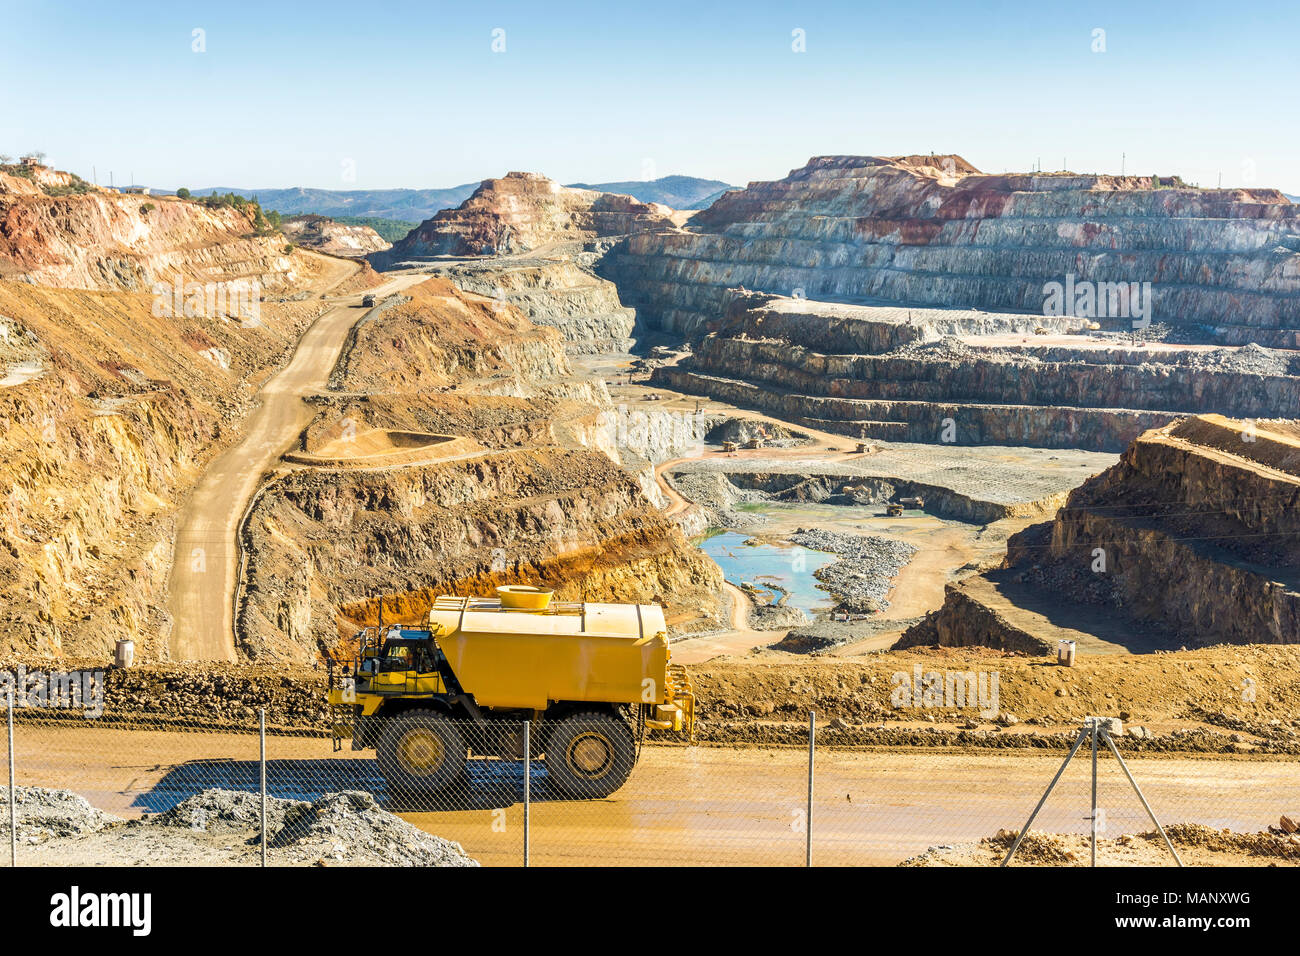 Gros véhicules de transport utilisés dans d'immenses mines à ciel ouvert et moderne dans la région de Minas de Riotinto, Andalousie, Espagne Banque D'Images